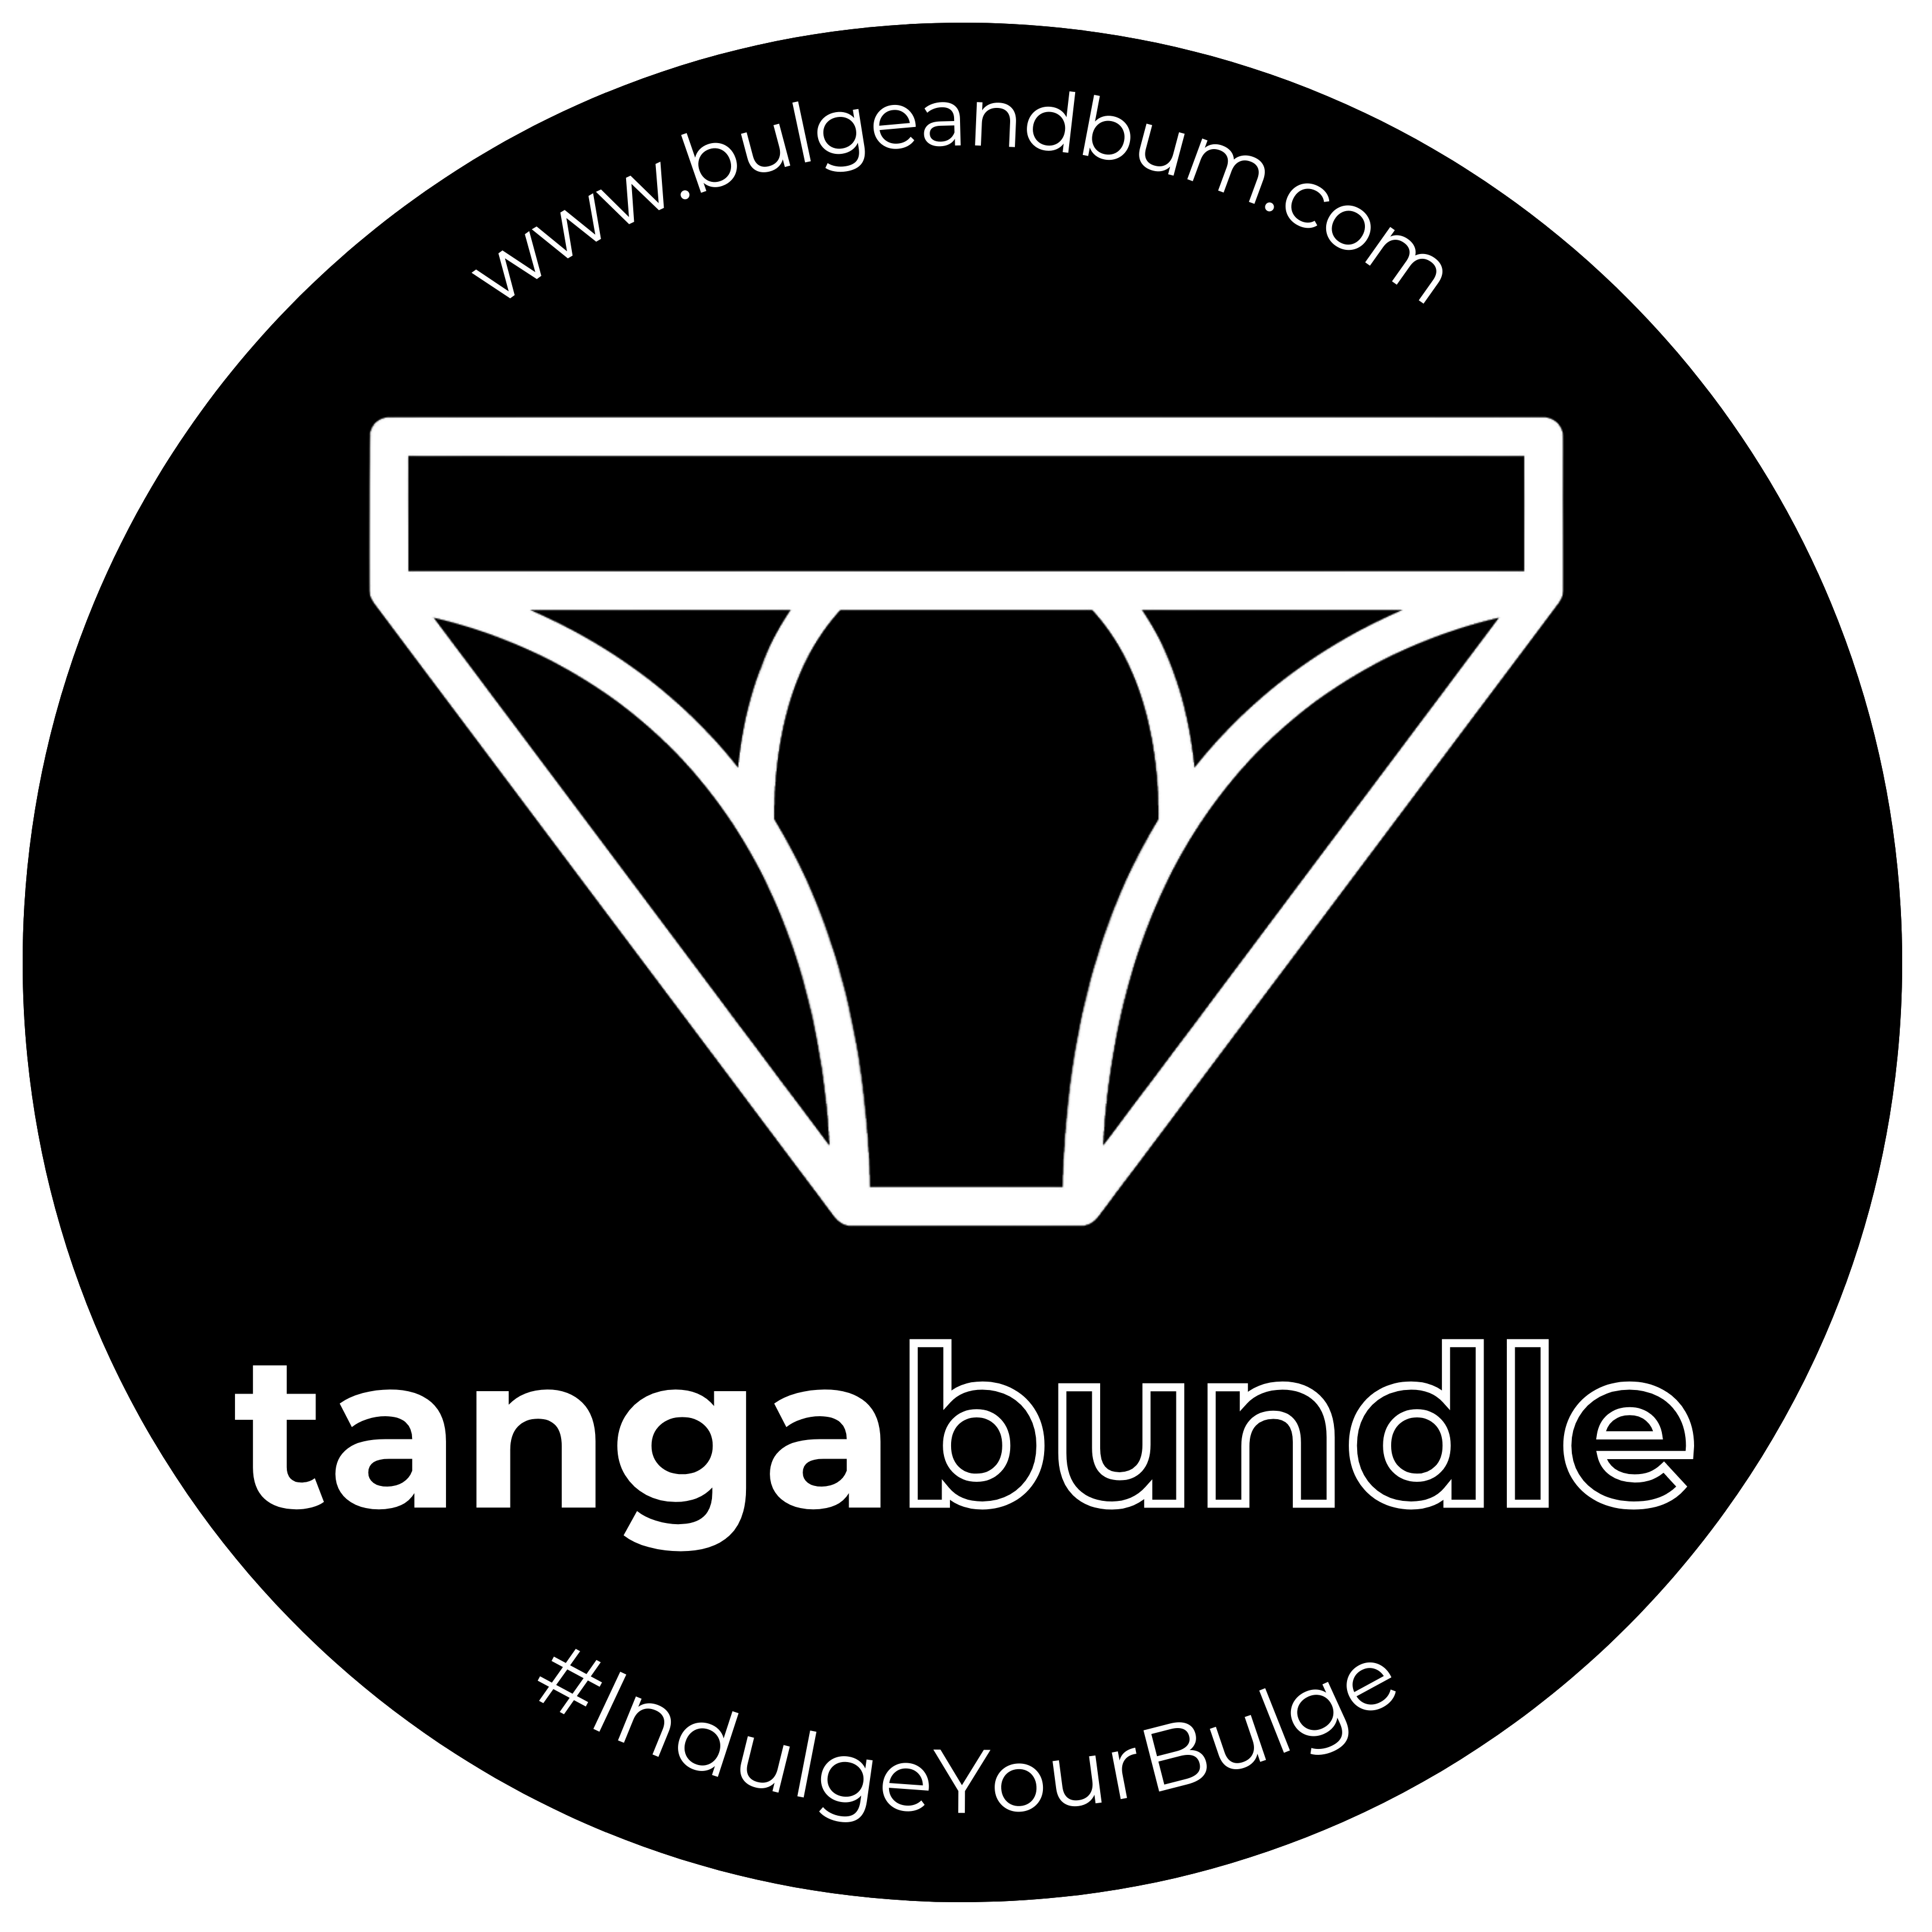 TangaBundle.png